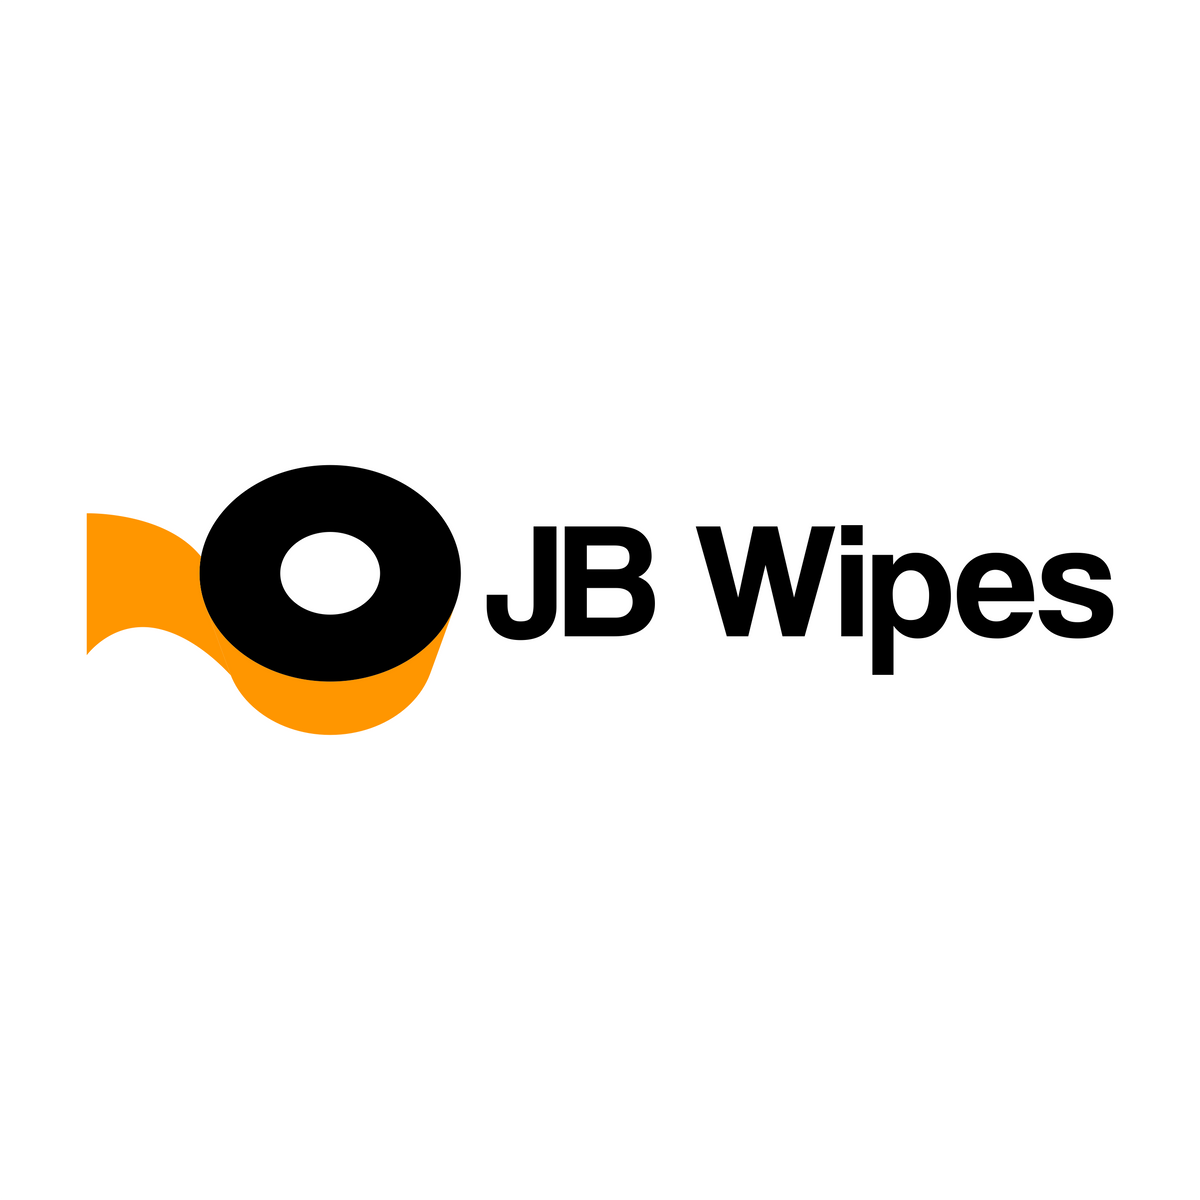 JB Wipes Professional Jewelry Polishing Cloth- 4ply – Jbwipes